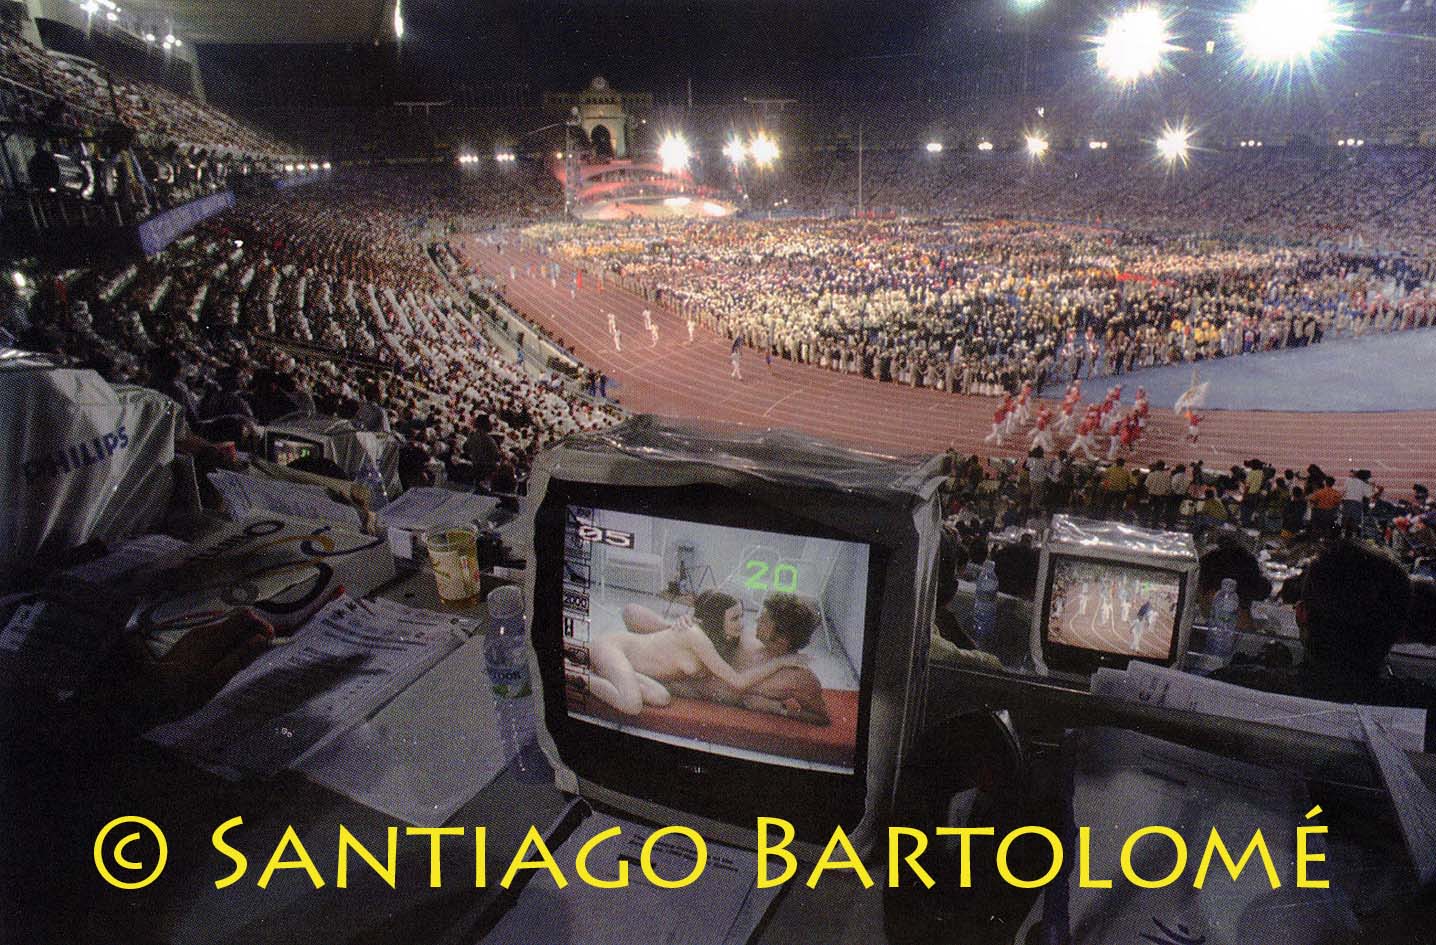 Fotografías de Santiago Bartolomé sobre diferentes momentos de los Juegos Olímpicos.